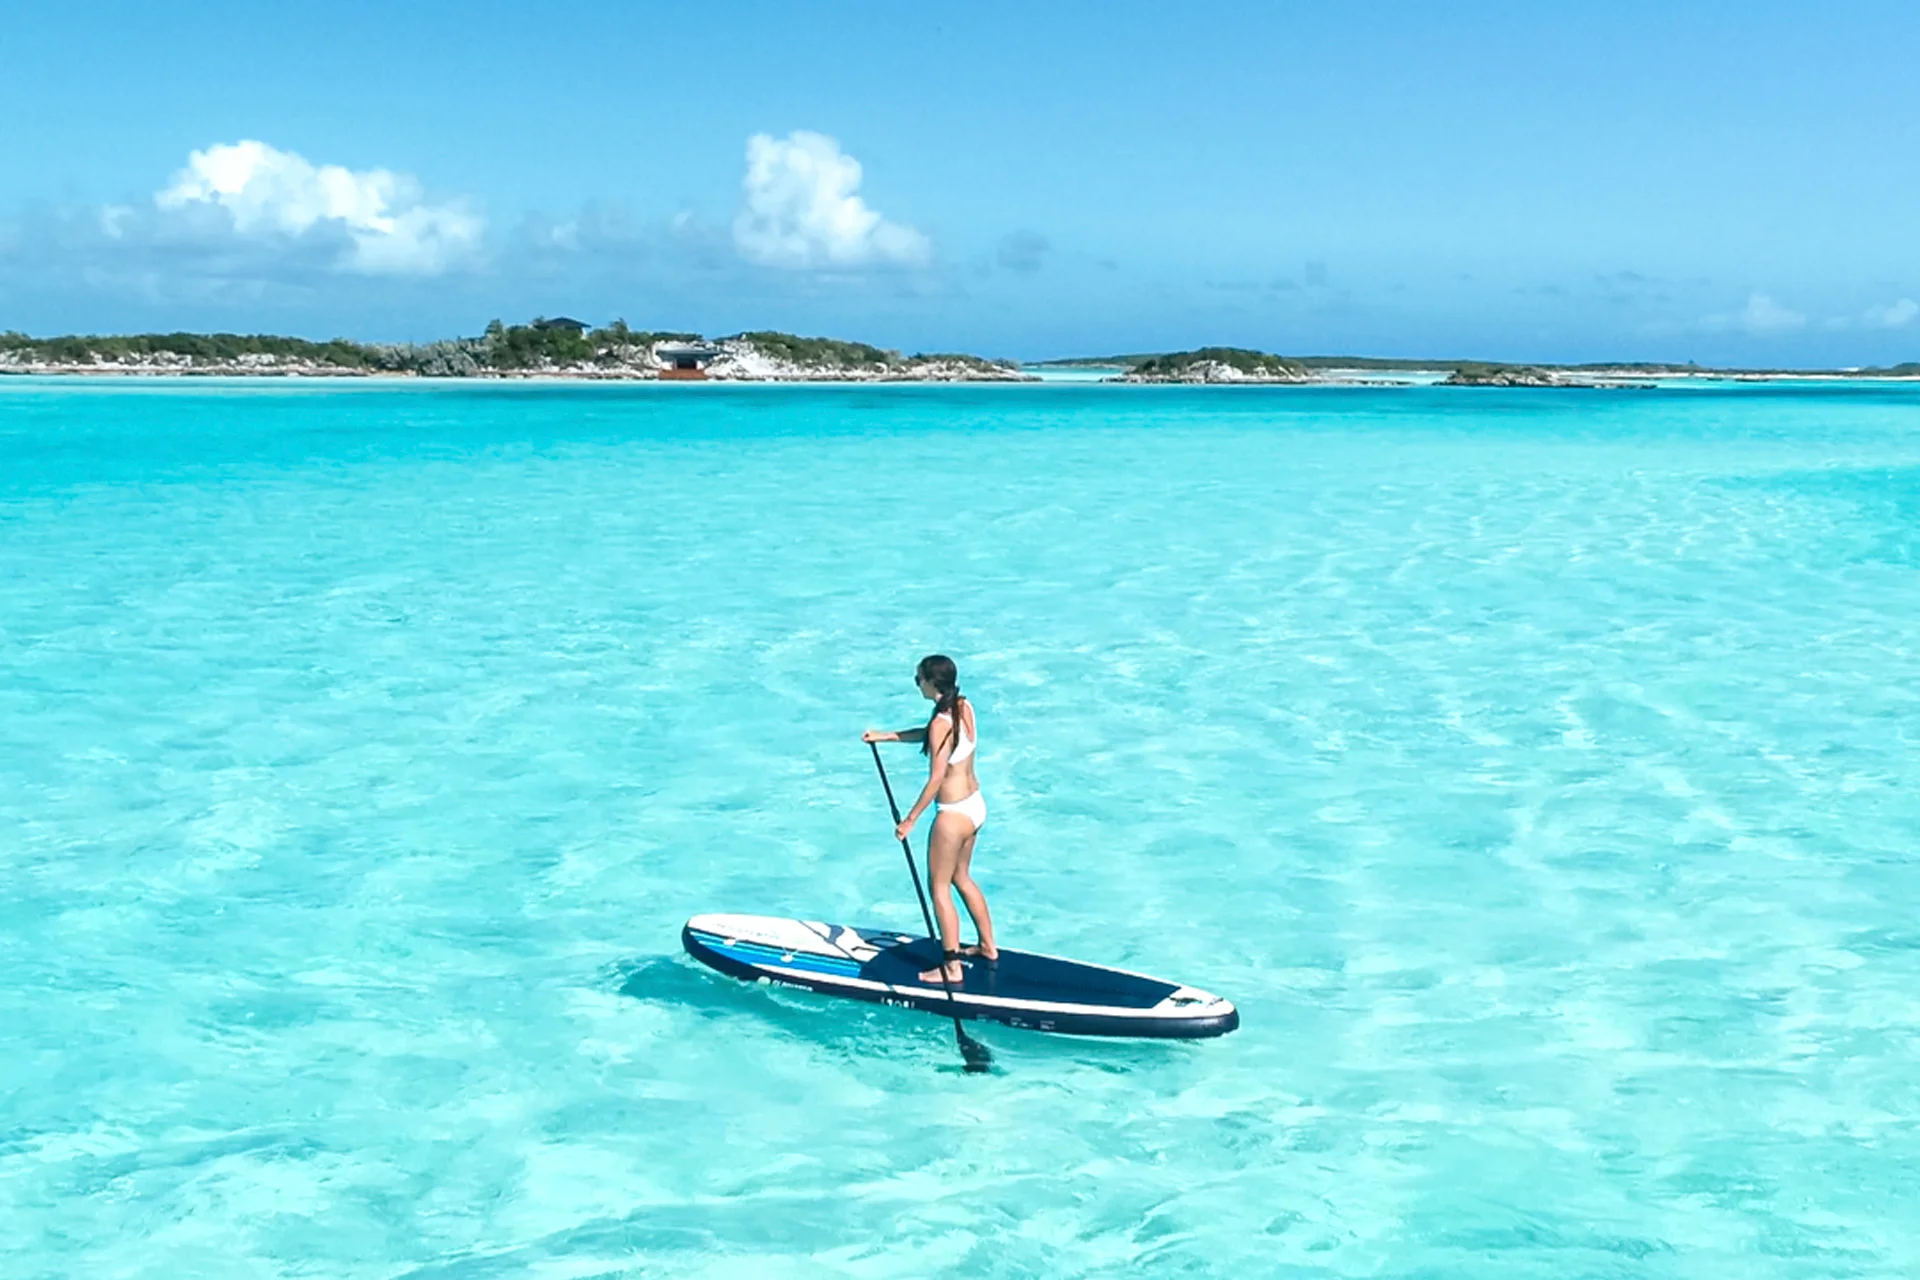 Bahamas woman enjoying sailing vations on surf board